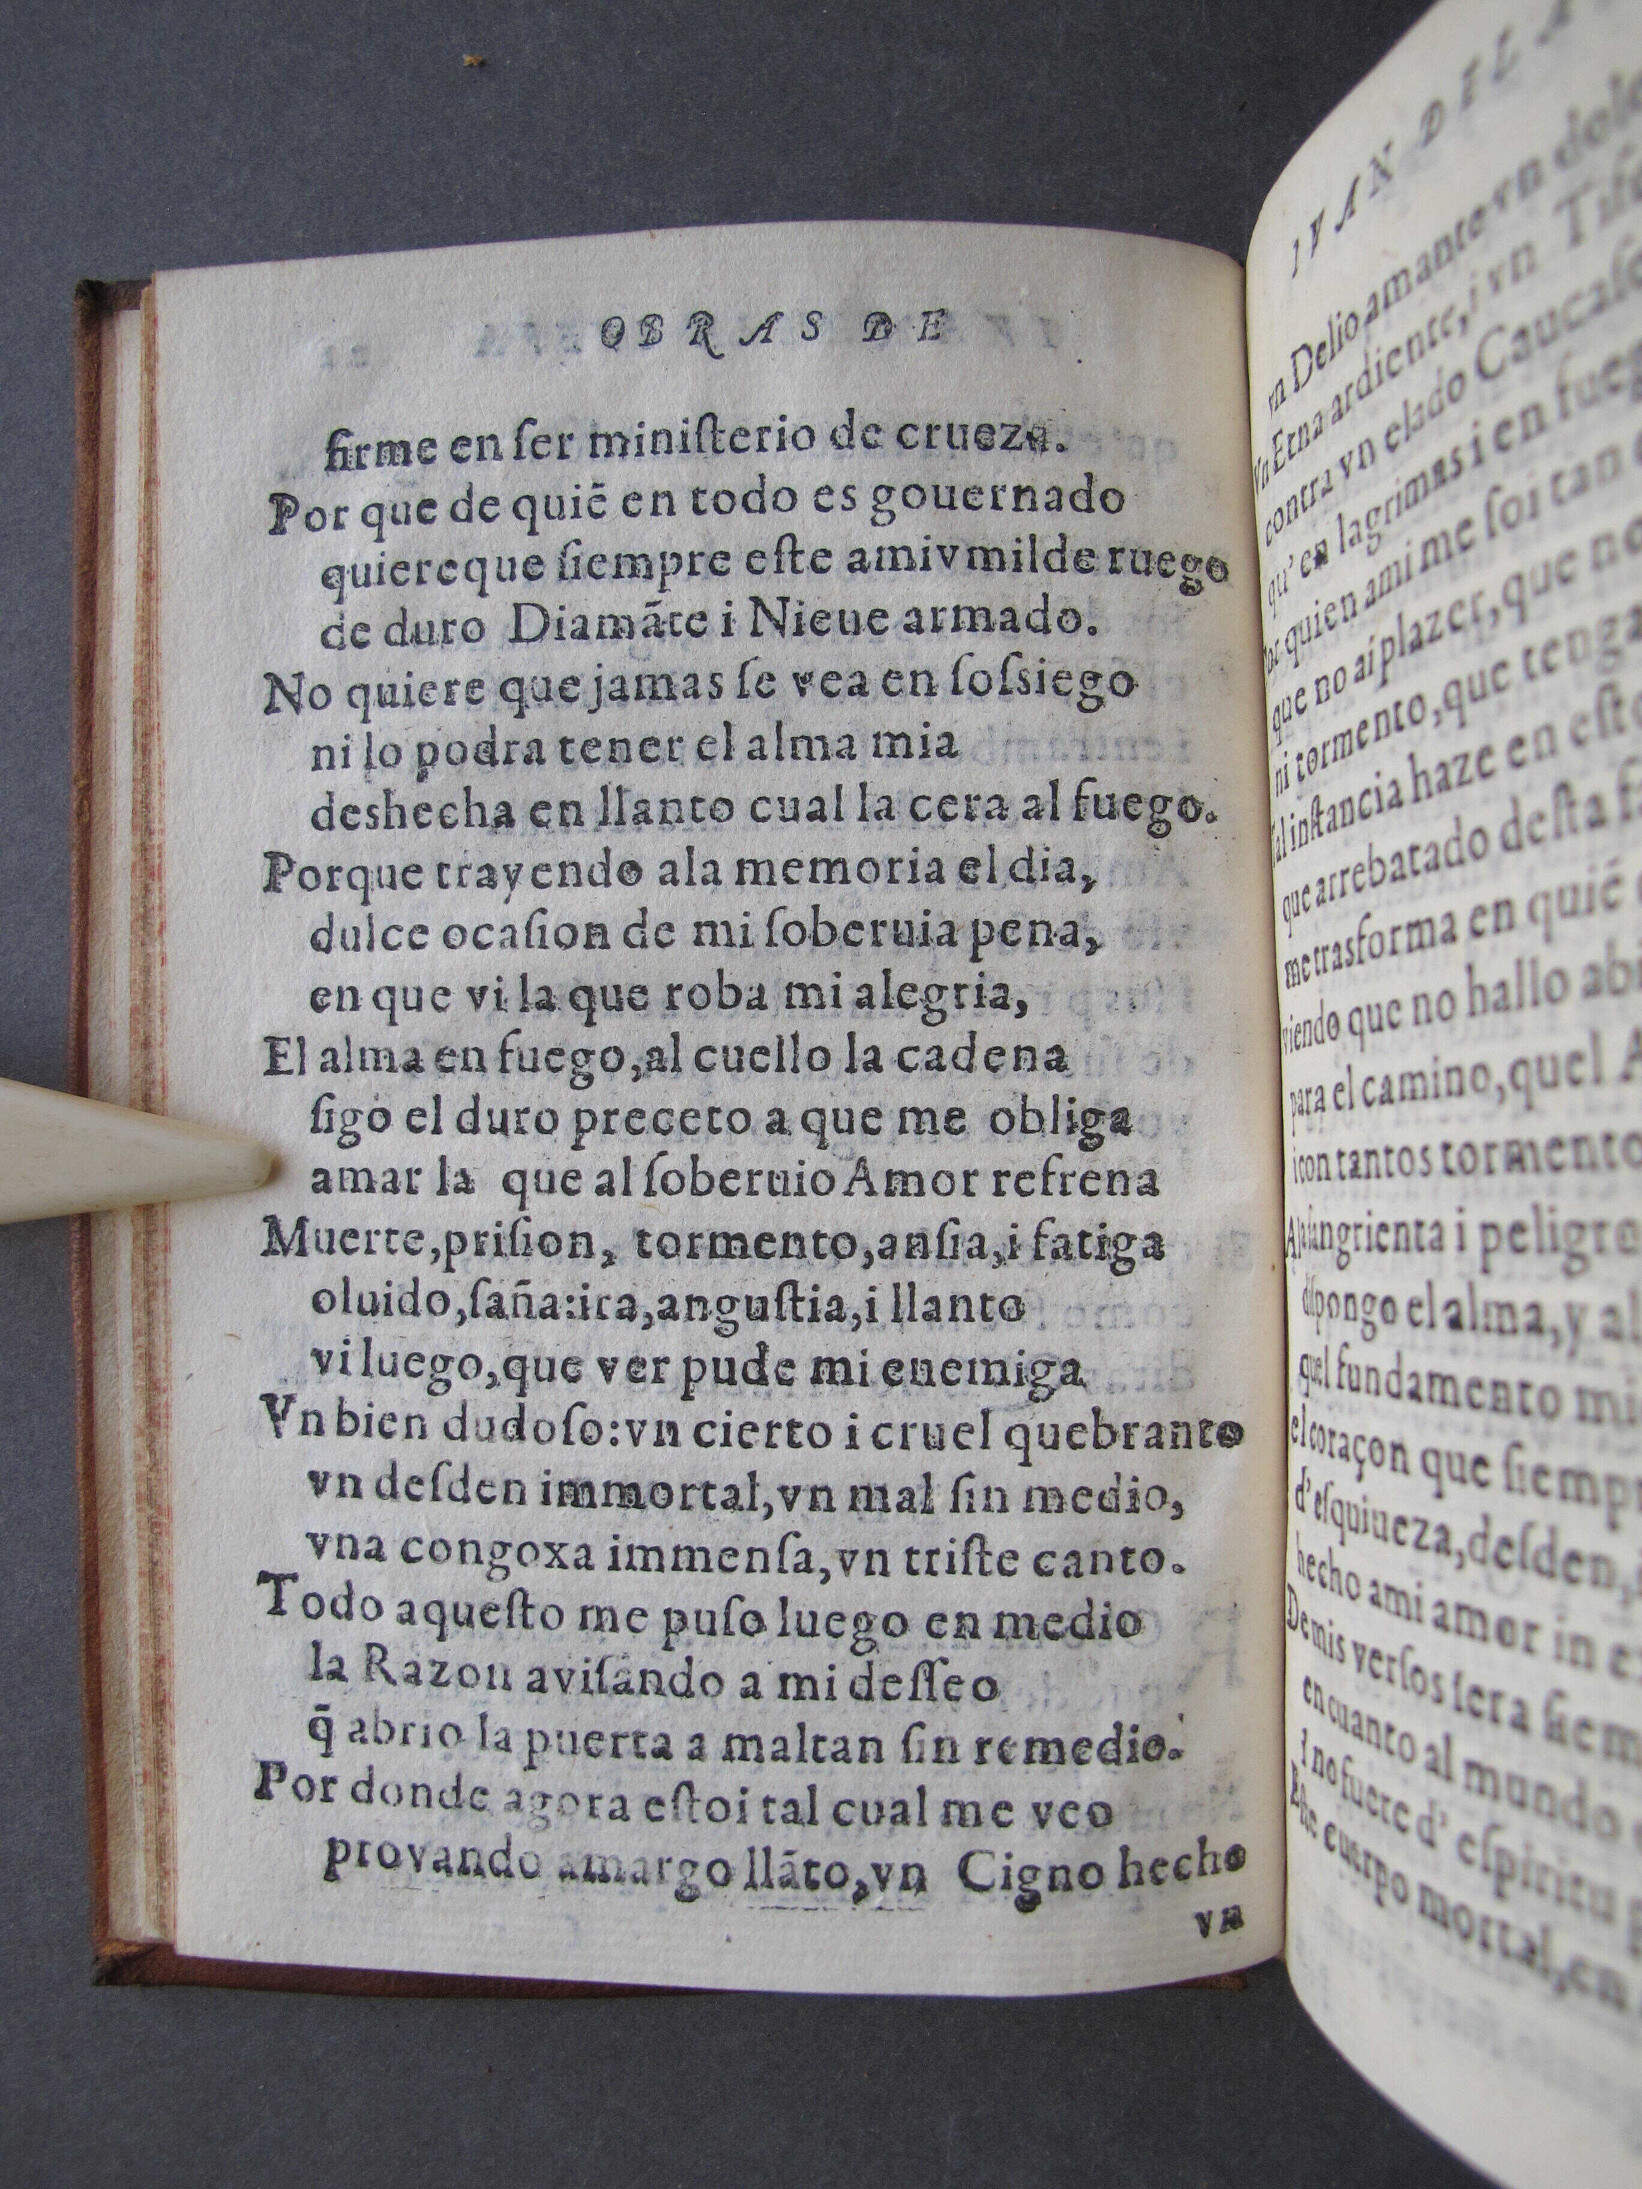 Folio C5 verso